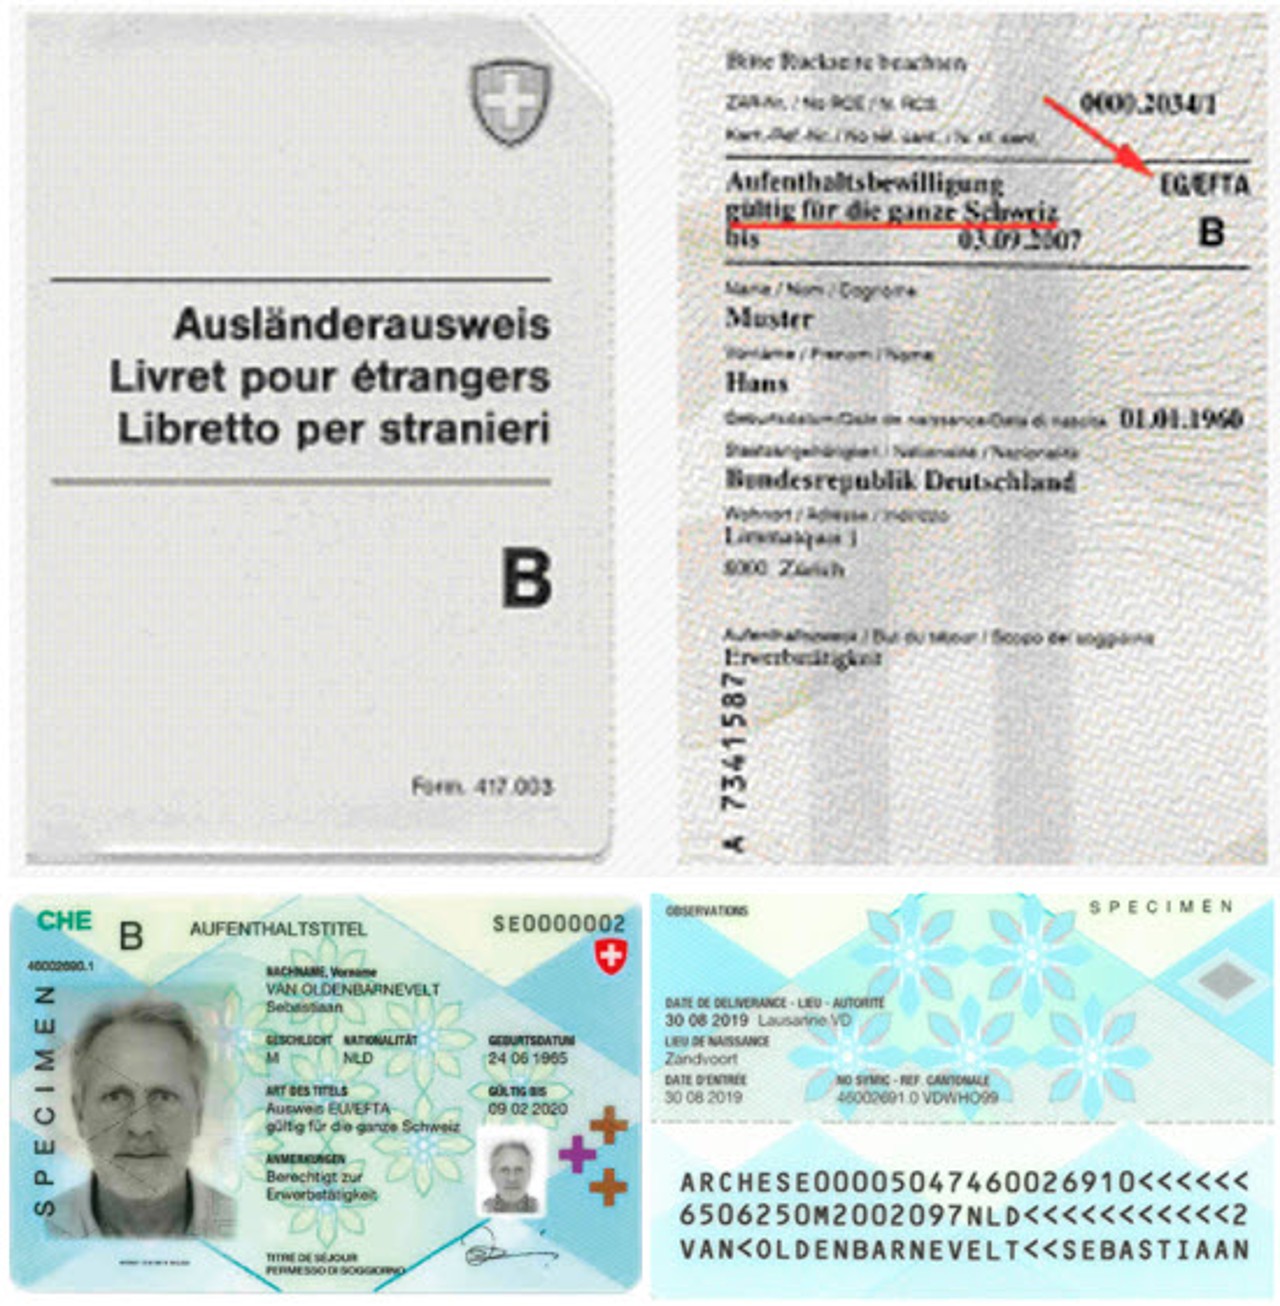 Ausländerausweis B (oben) und Ausweis B AA19-EU/EFTA (unten)